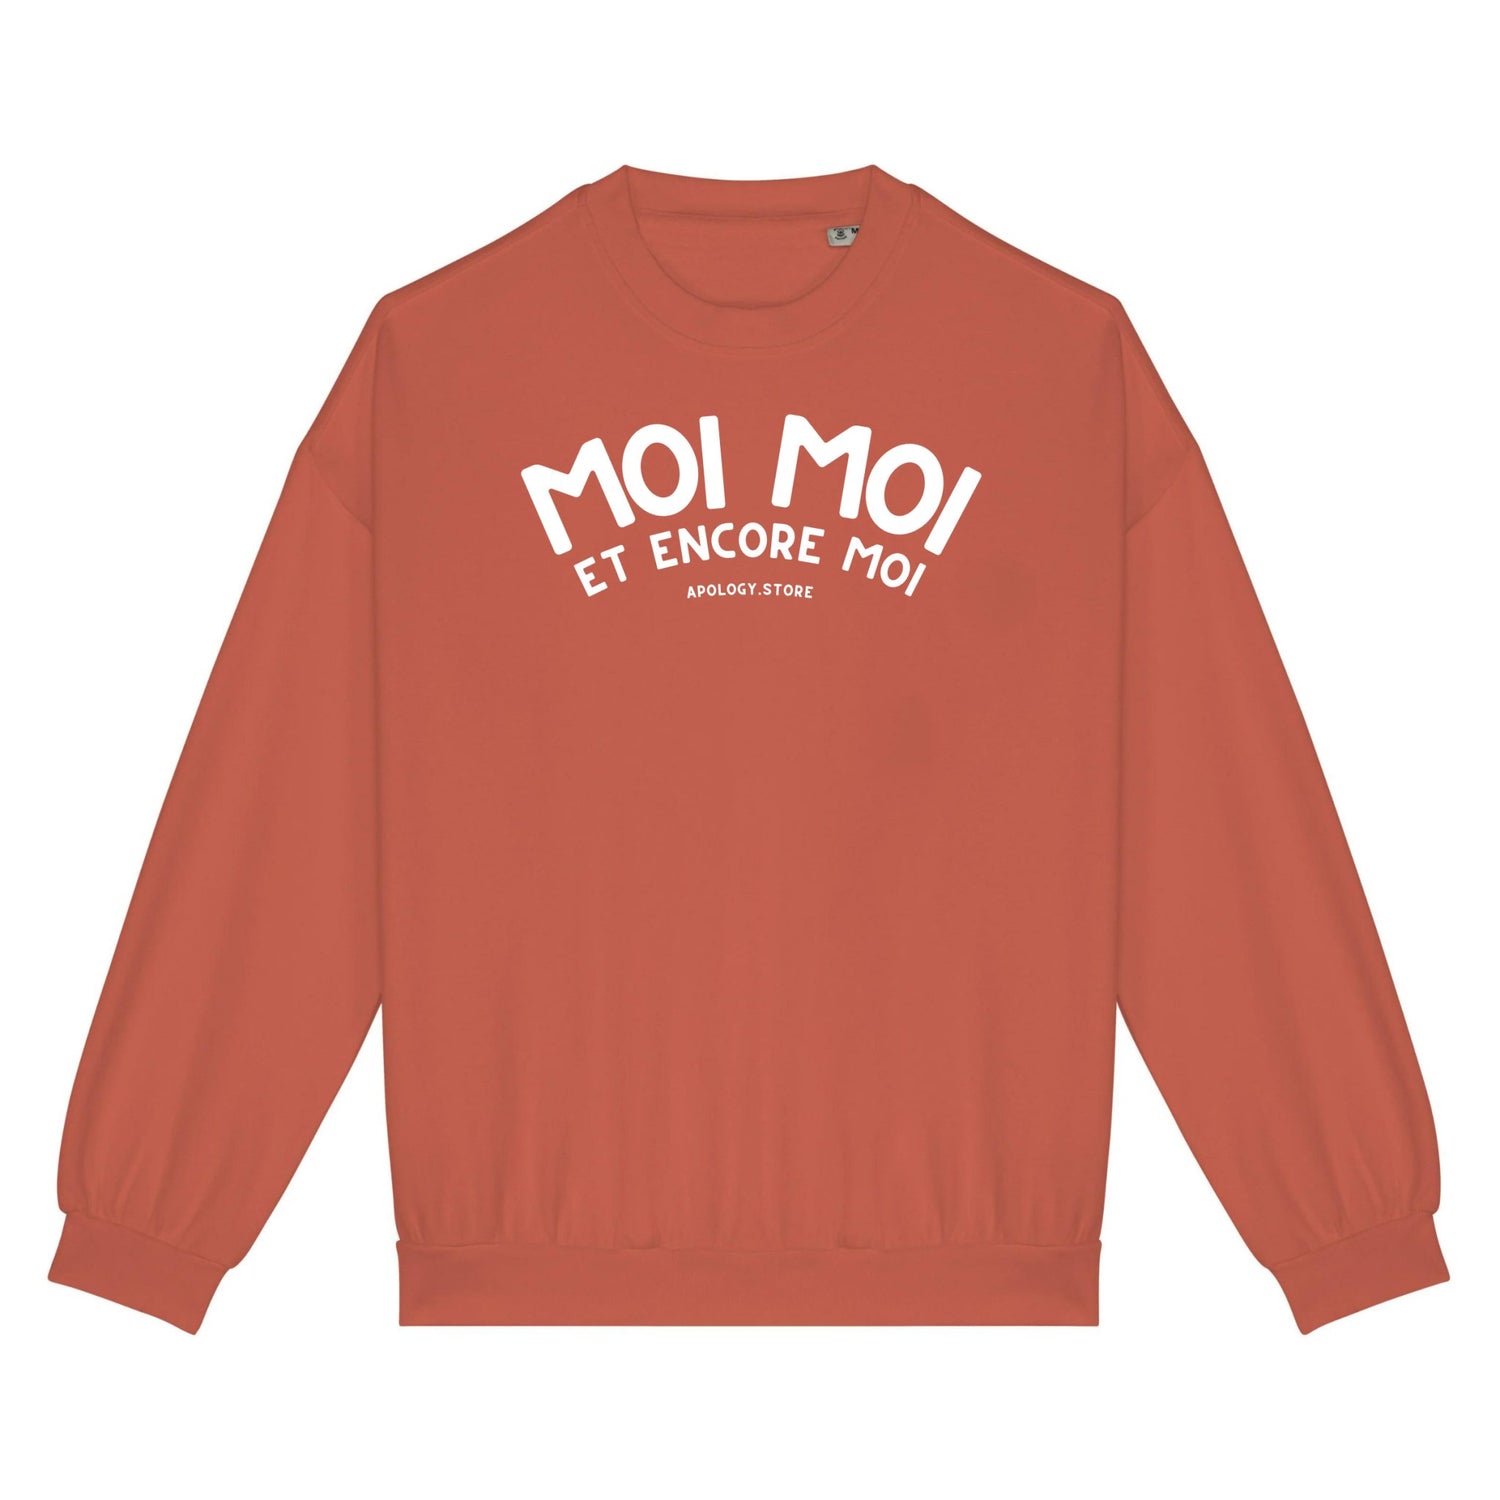 Sweat-shirt Moi Moi Et Moi Encore - Fabriqué au Portugal XS Orange_pomelo - Imprimé en France